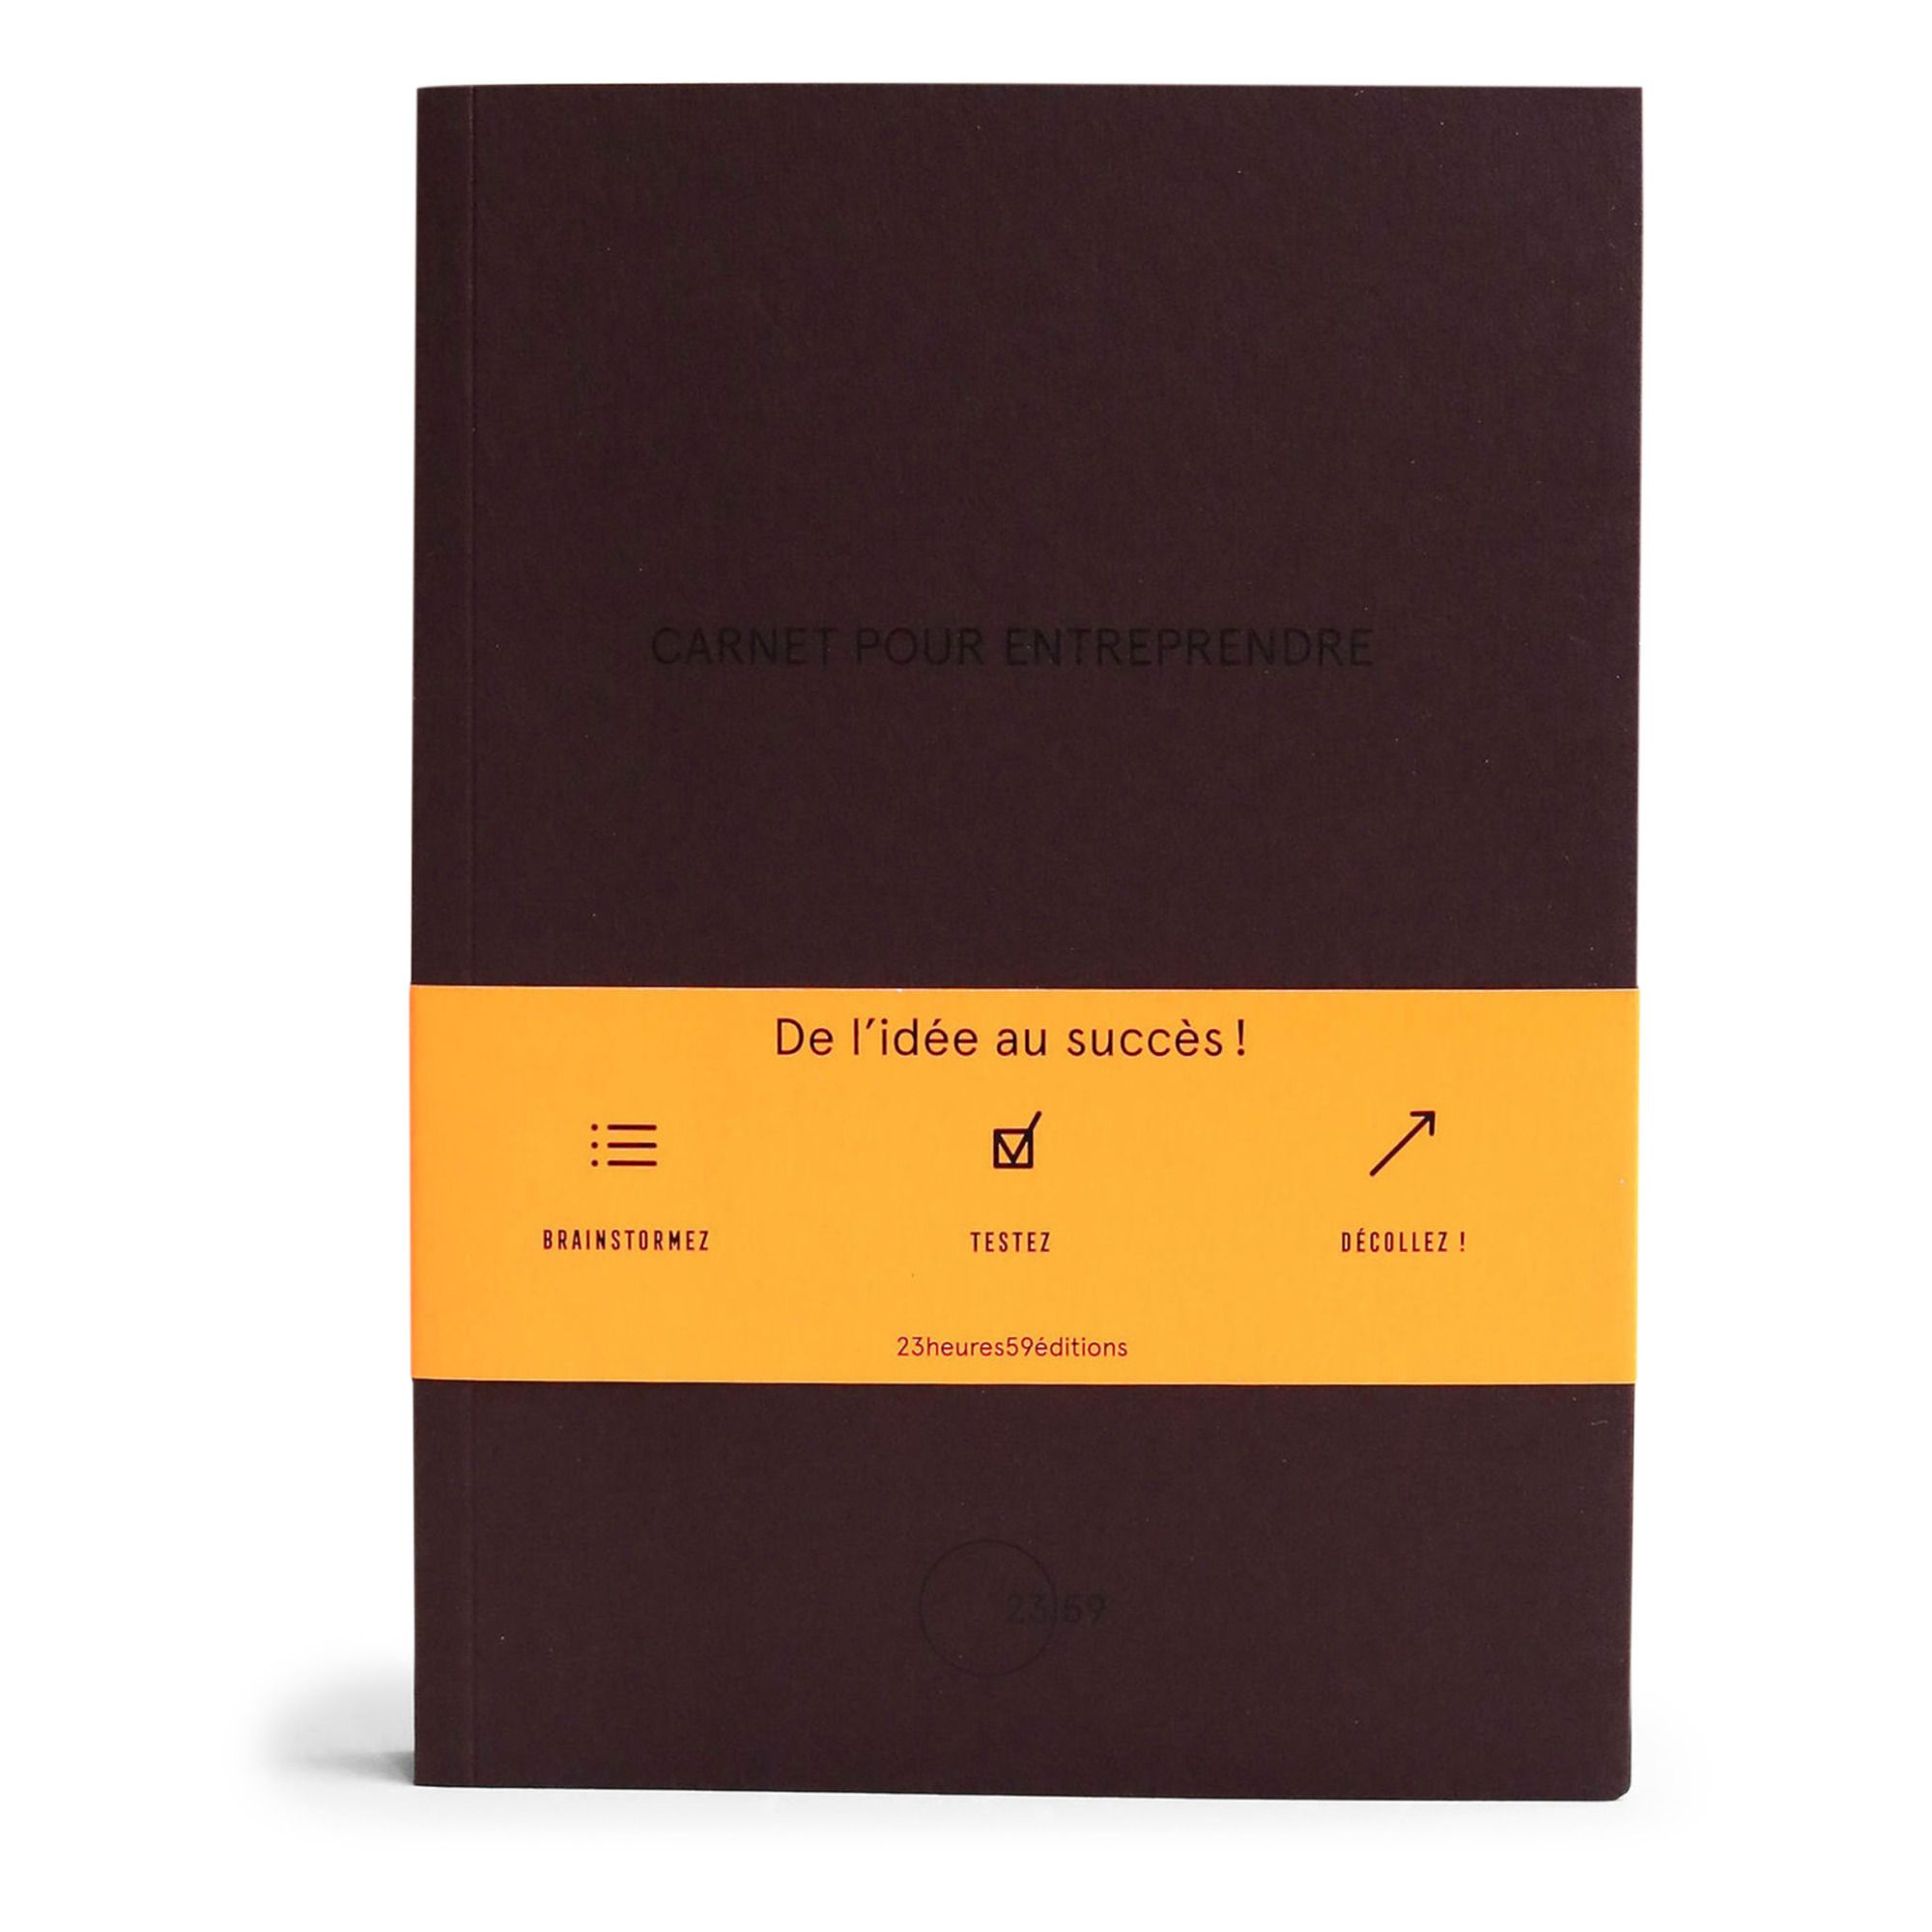 23heures59 éditions - Carnet pour Entreprendre - Bordeaux